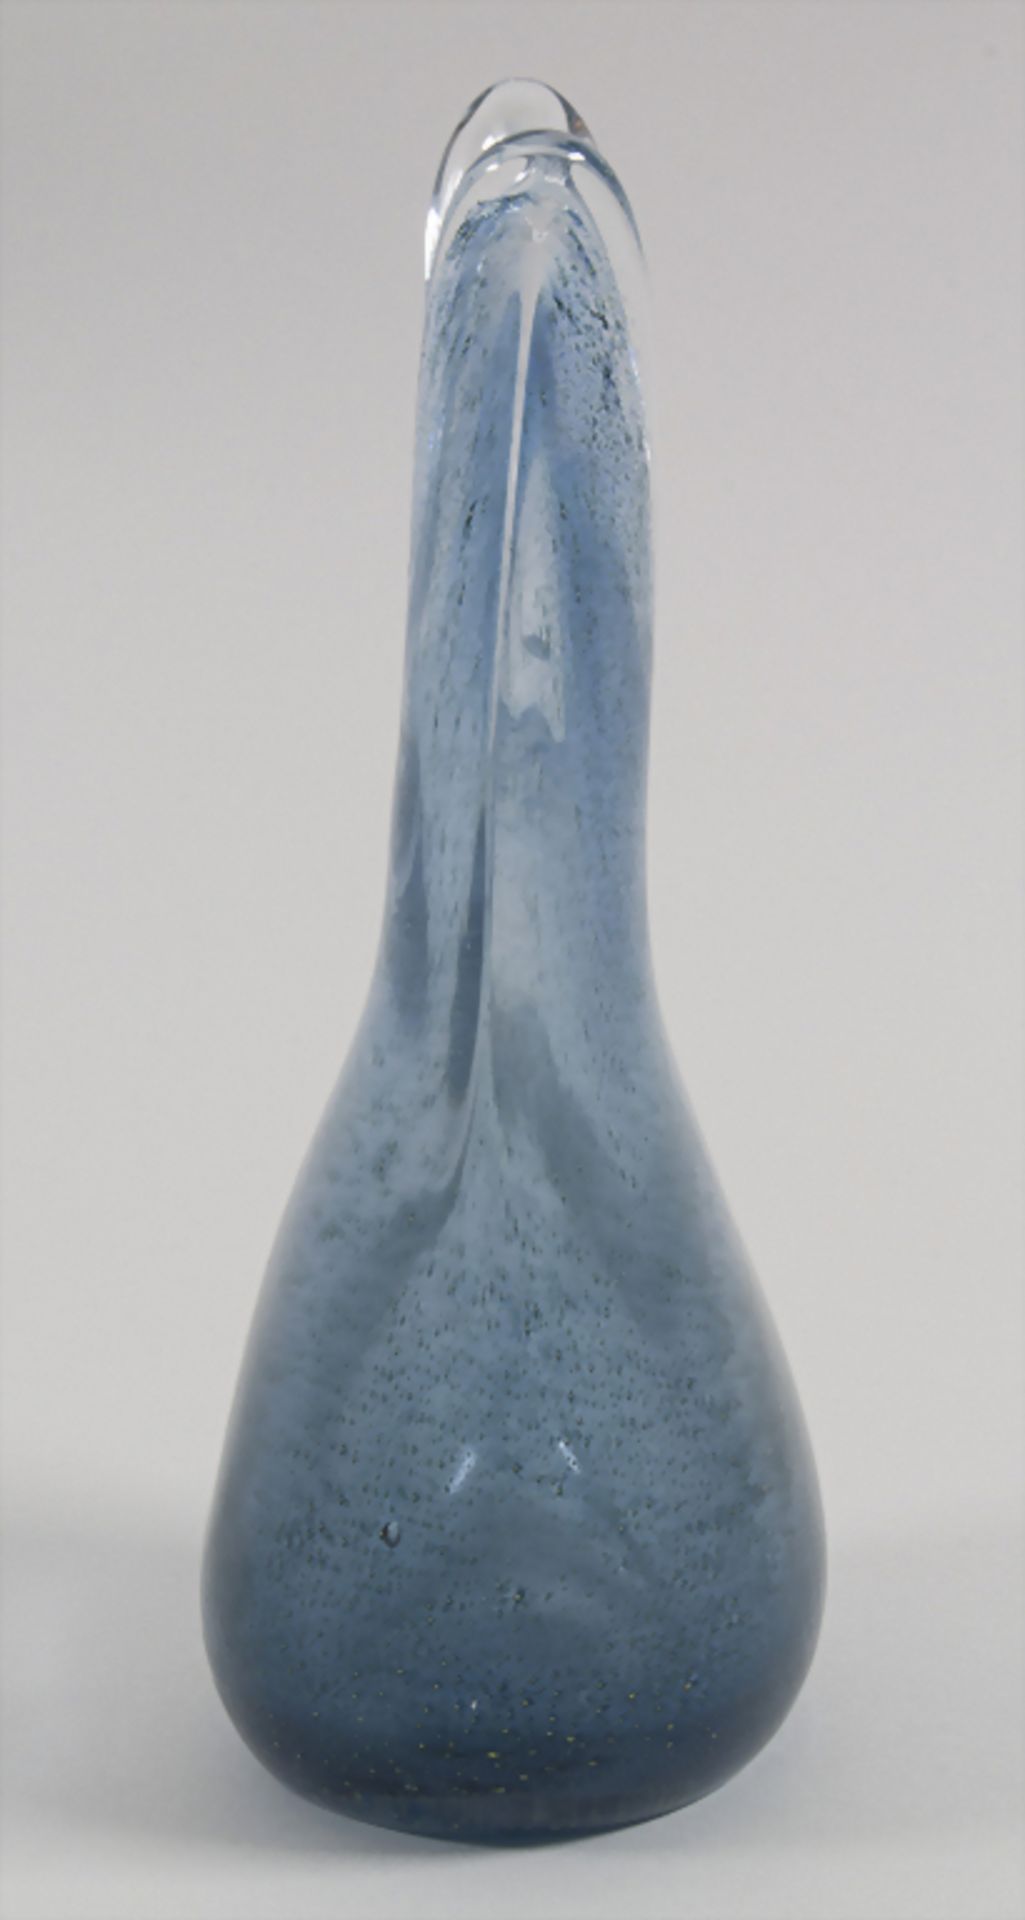 Glasziervase 'Cobalto' / A decorative vase 'Cobalto', Barovier & Toso, Entw. Ercole Barovier, - Image 4 of 7